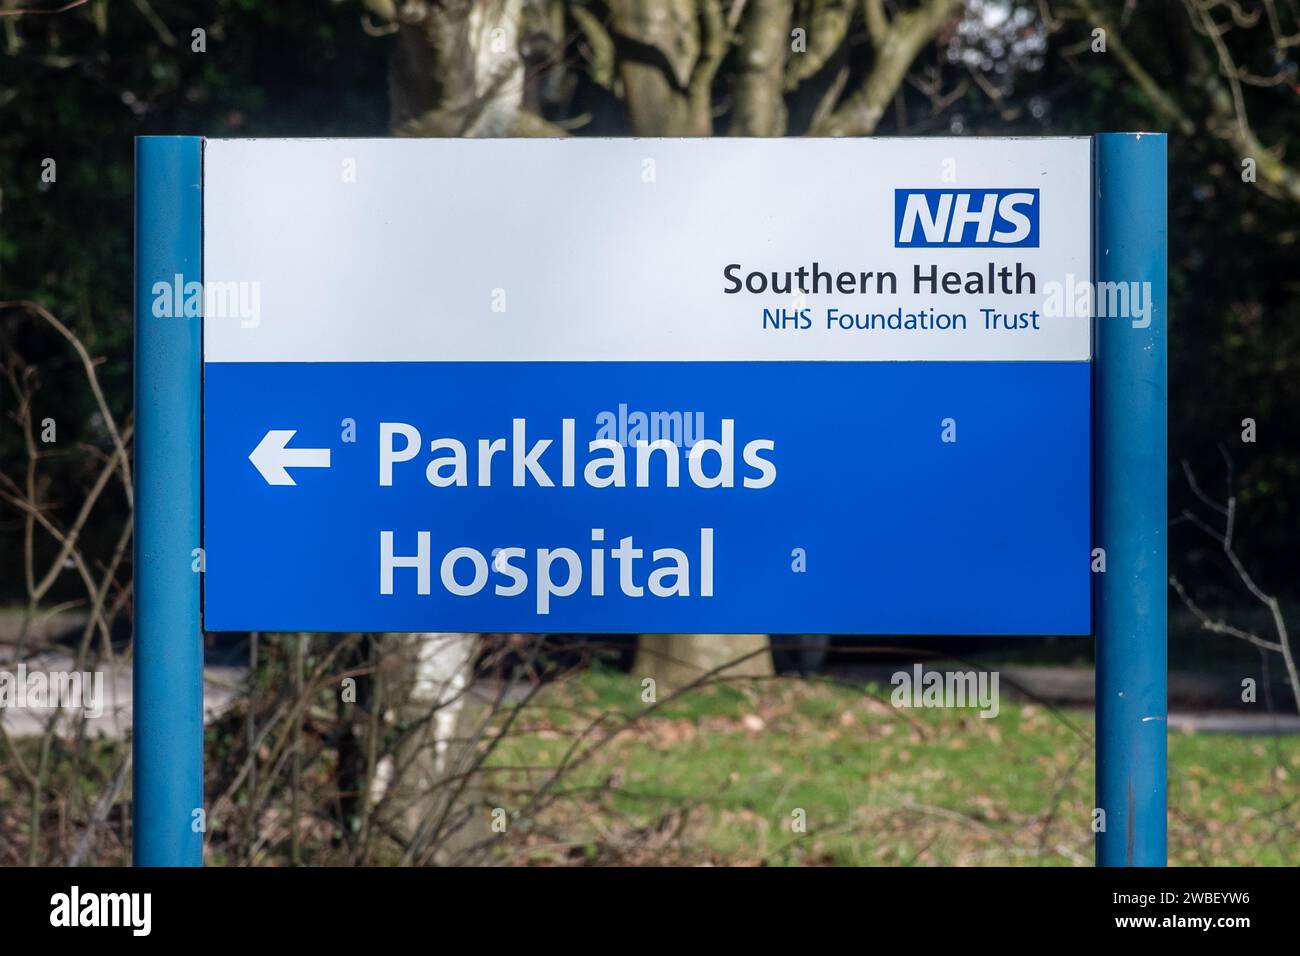 Signalisation à l'hôpital Parklands à Basingstoke, Hampshire, Angleterre, un établissement de santé mentale Banque D'Images